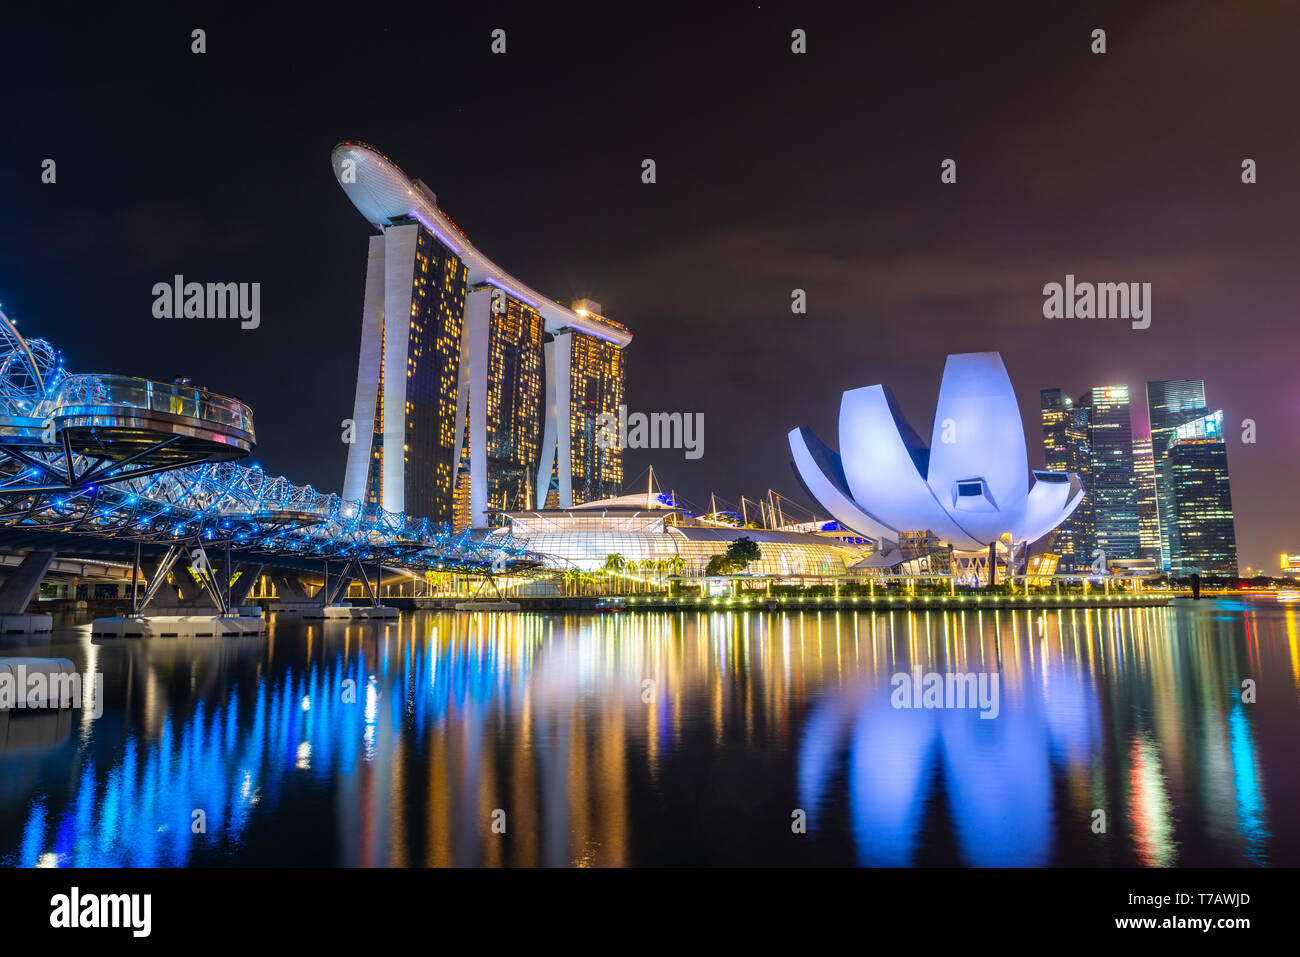 SINGAPORE - MARZO 24, 2019: Helix Bridge, il Marina Bay sands hotel e il Museo ArtScience di notte. Foto Stock